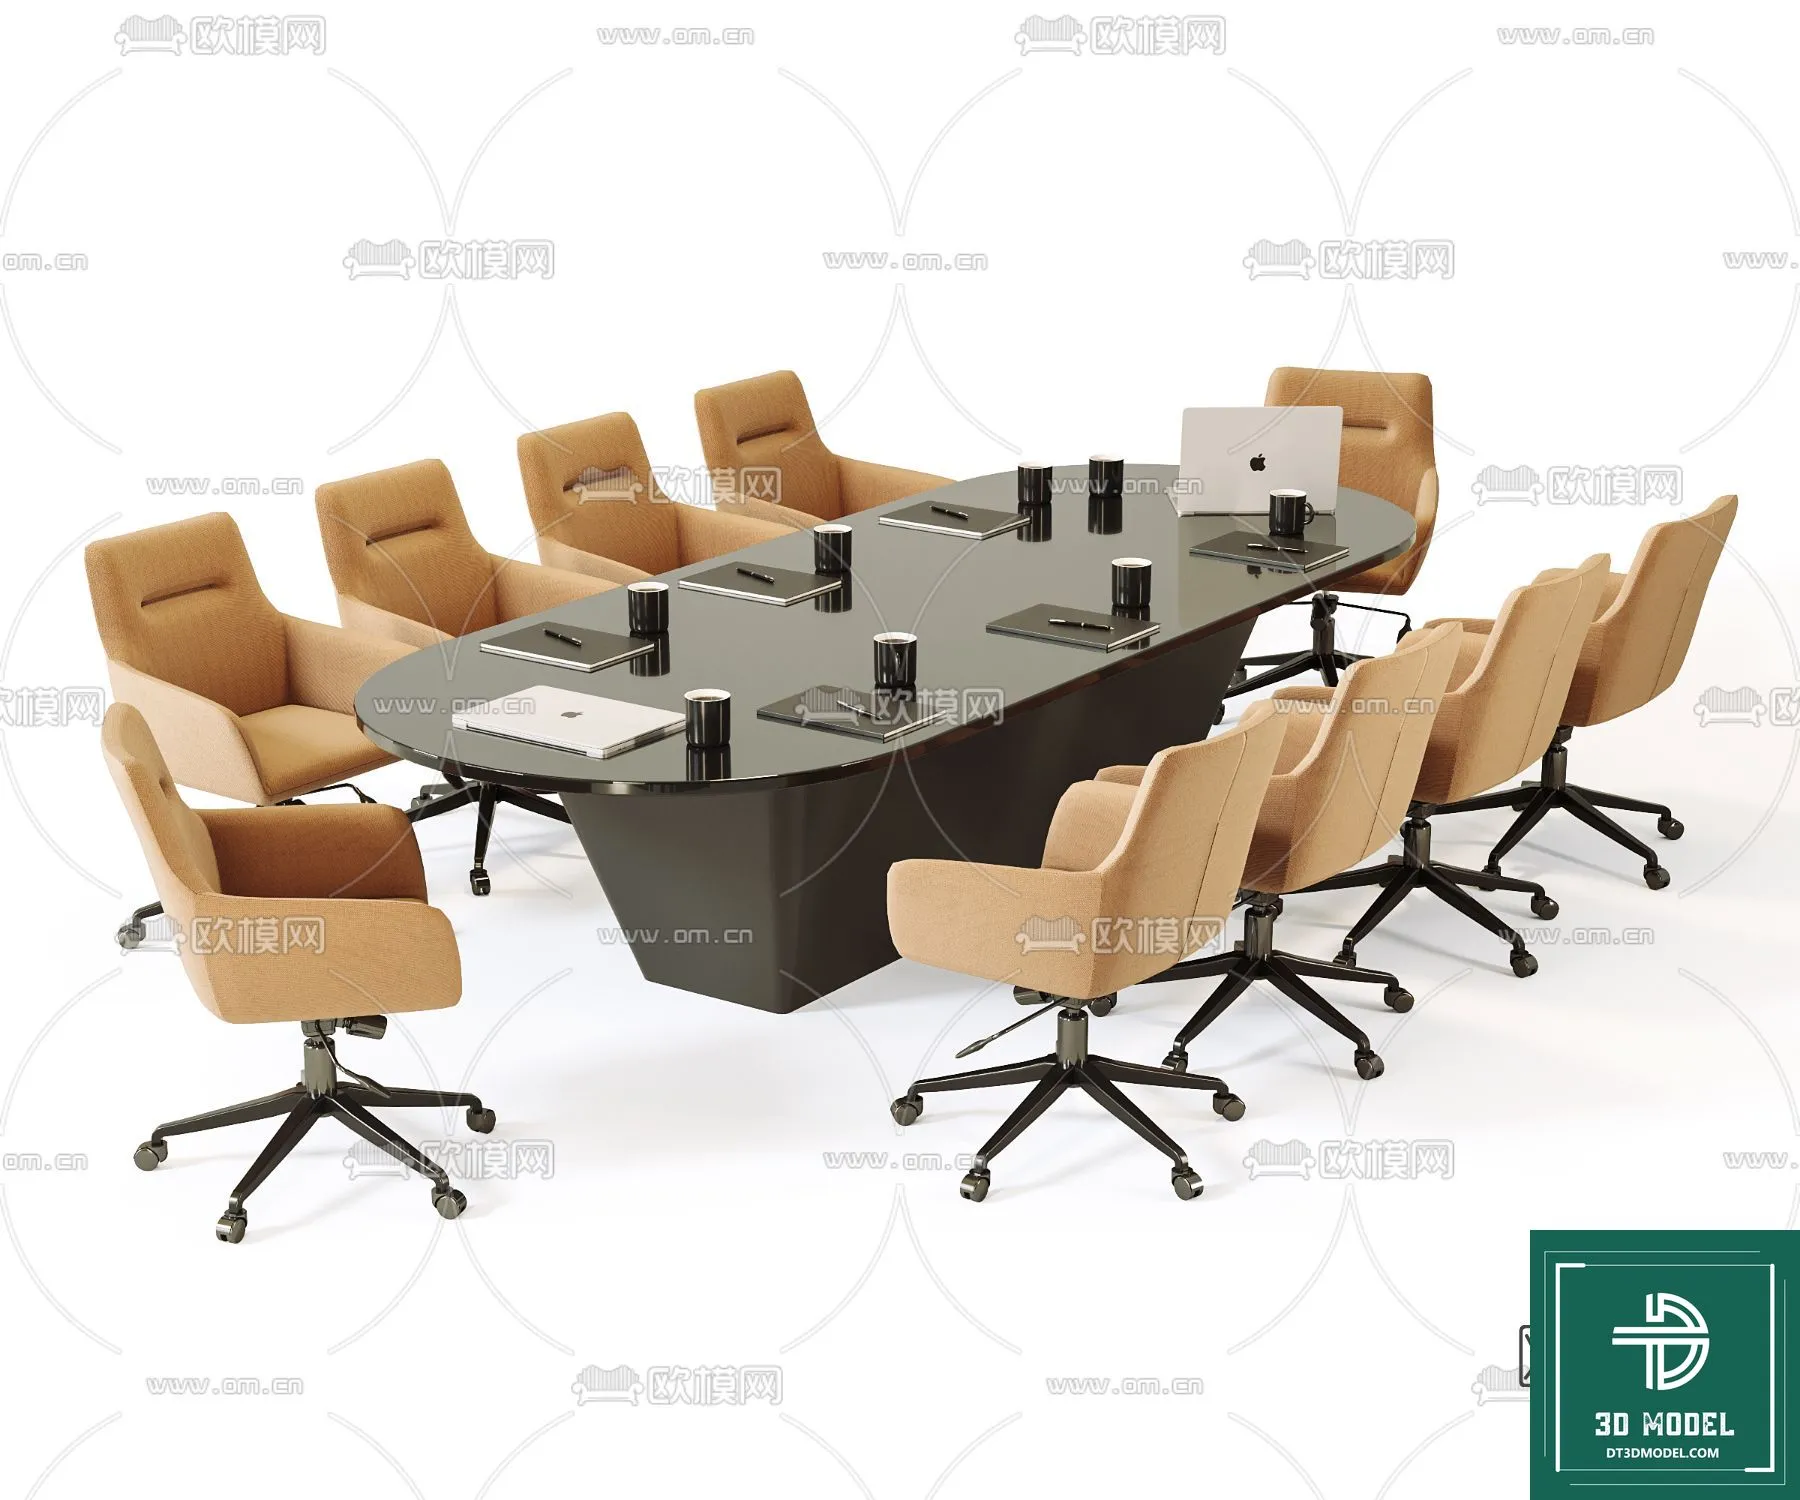 OFFICE TABLES – DESK 3DMODELS – 001